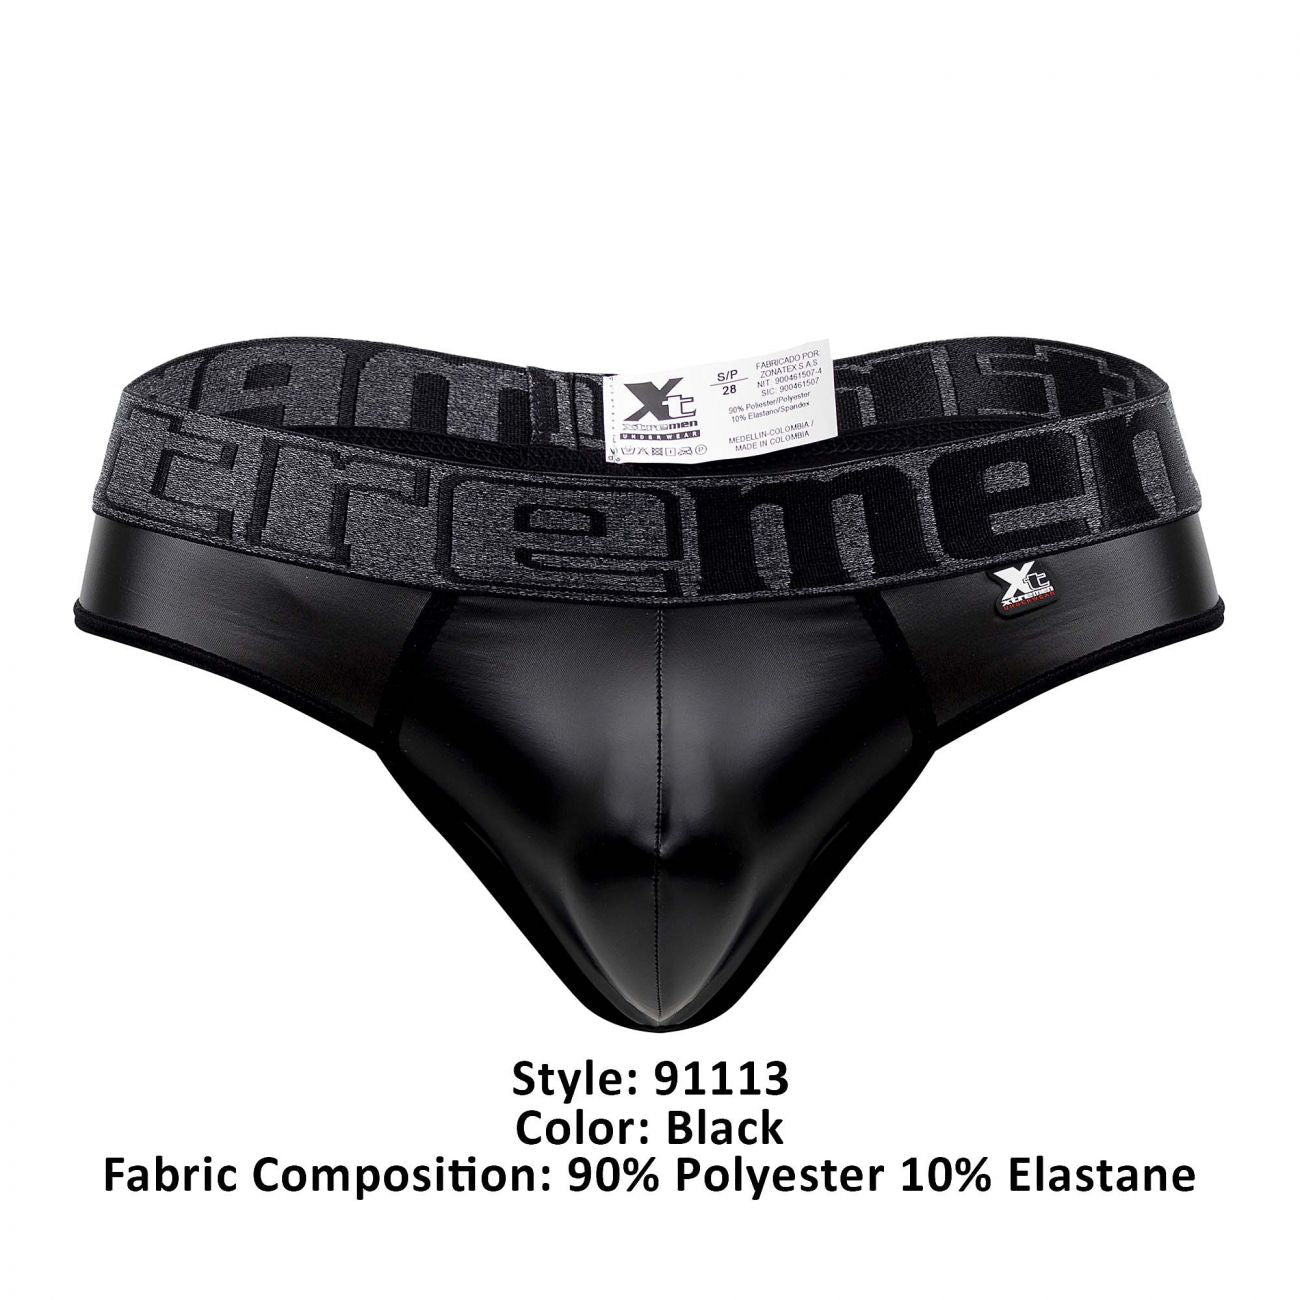 Xtremen 91113 Faux Leather Thongs Black